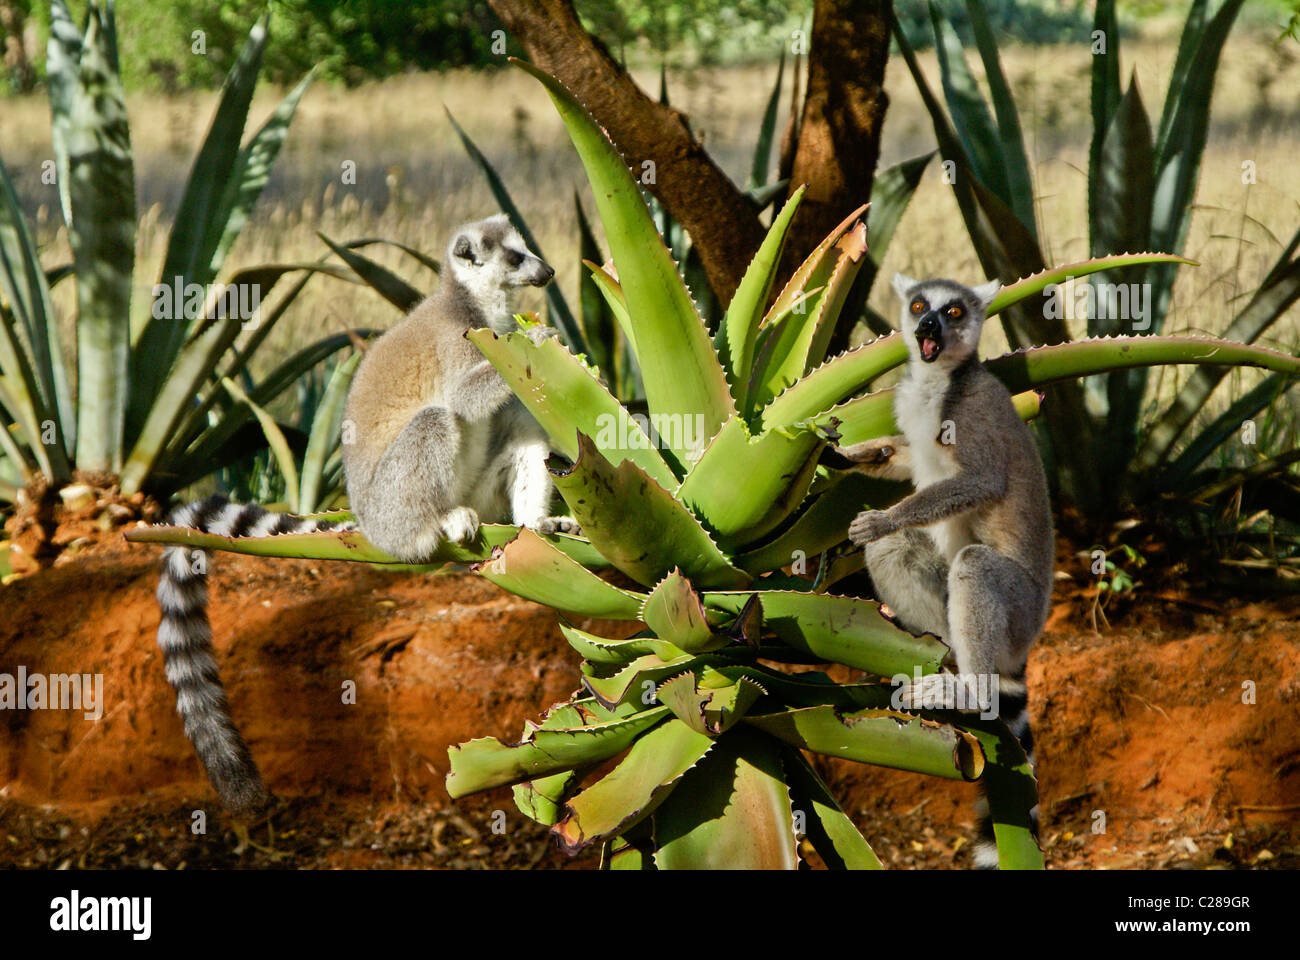 Ring-tailed lemurs feeding on aloe plant, Madagascar Stock Photo